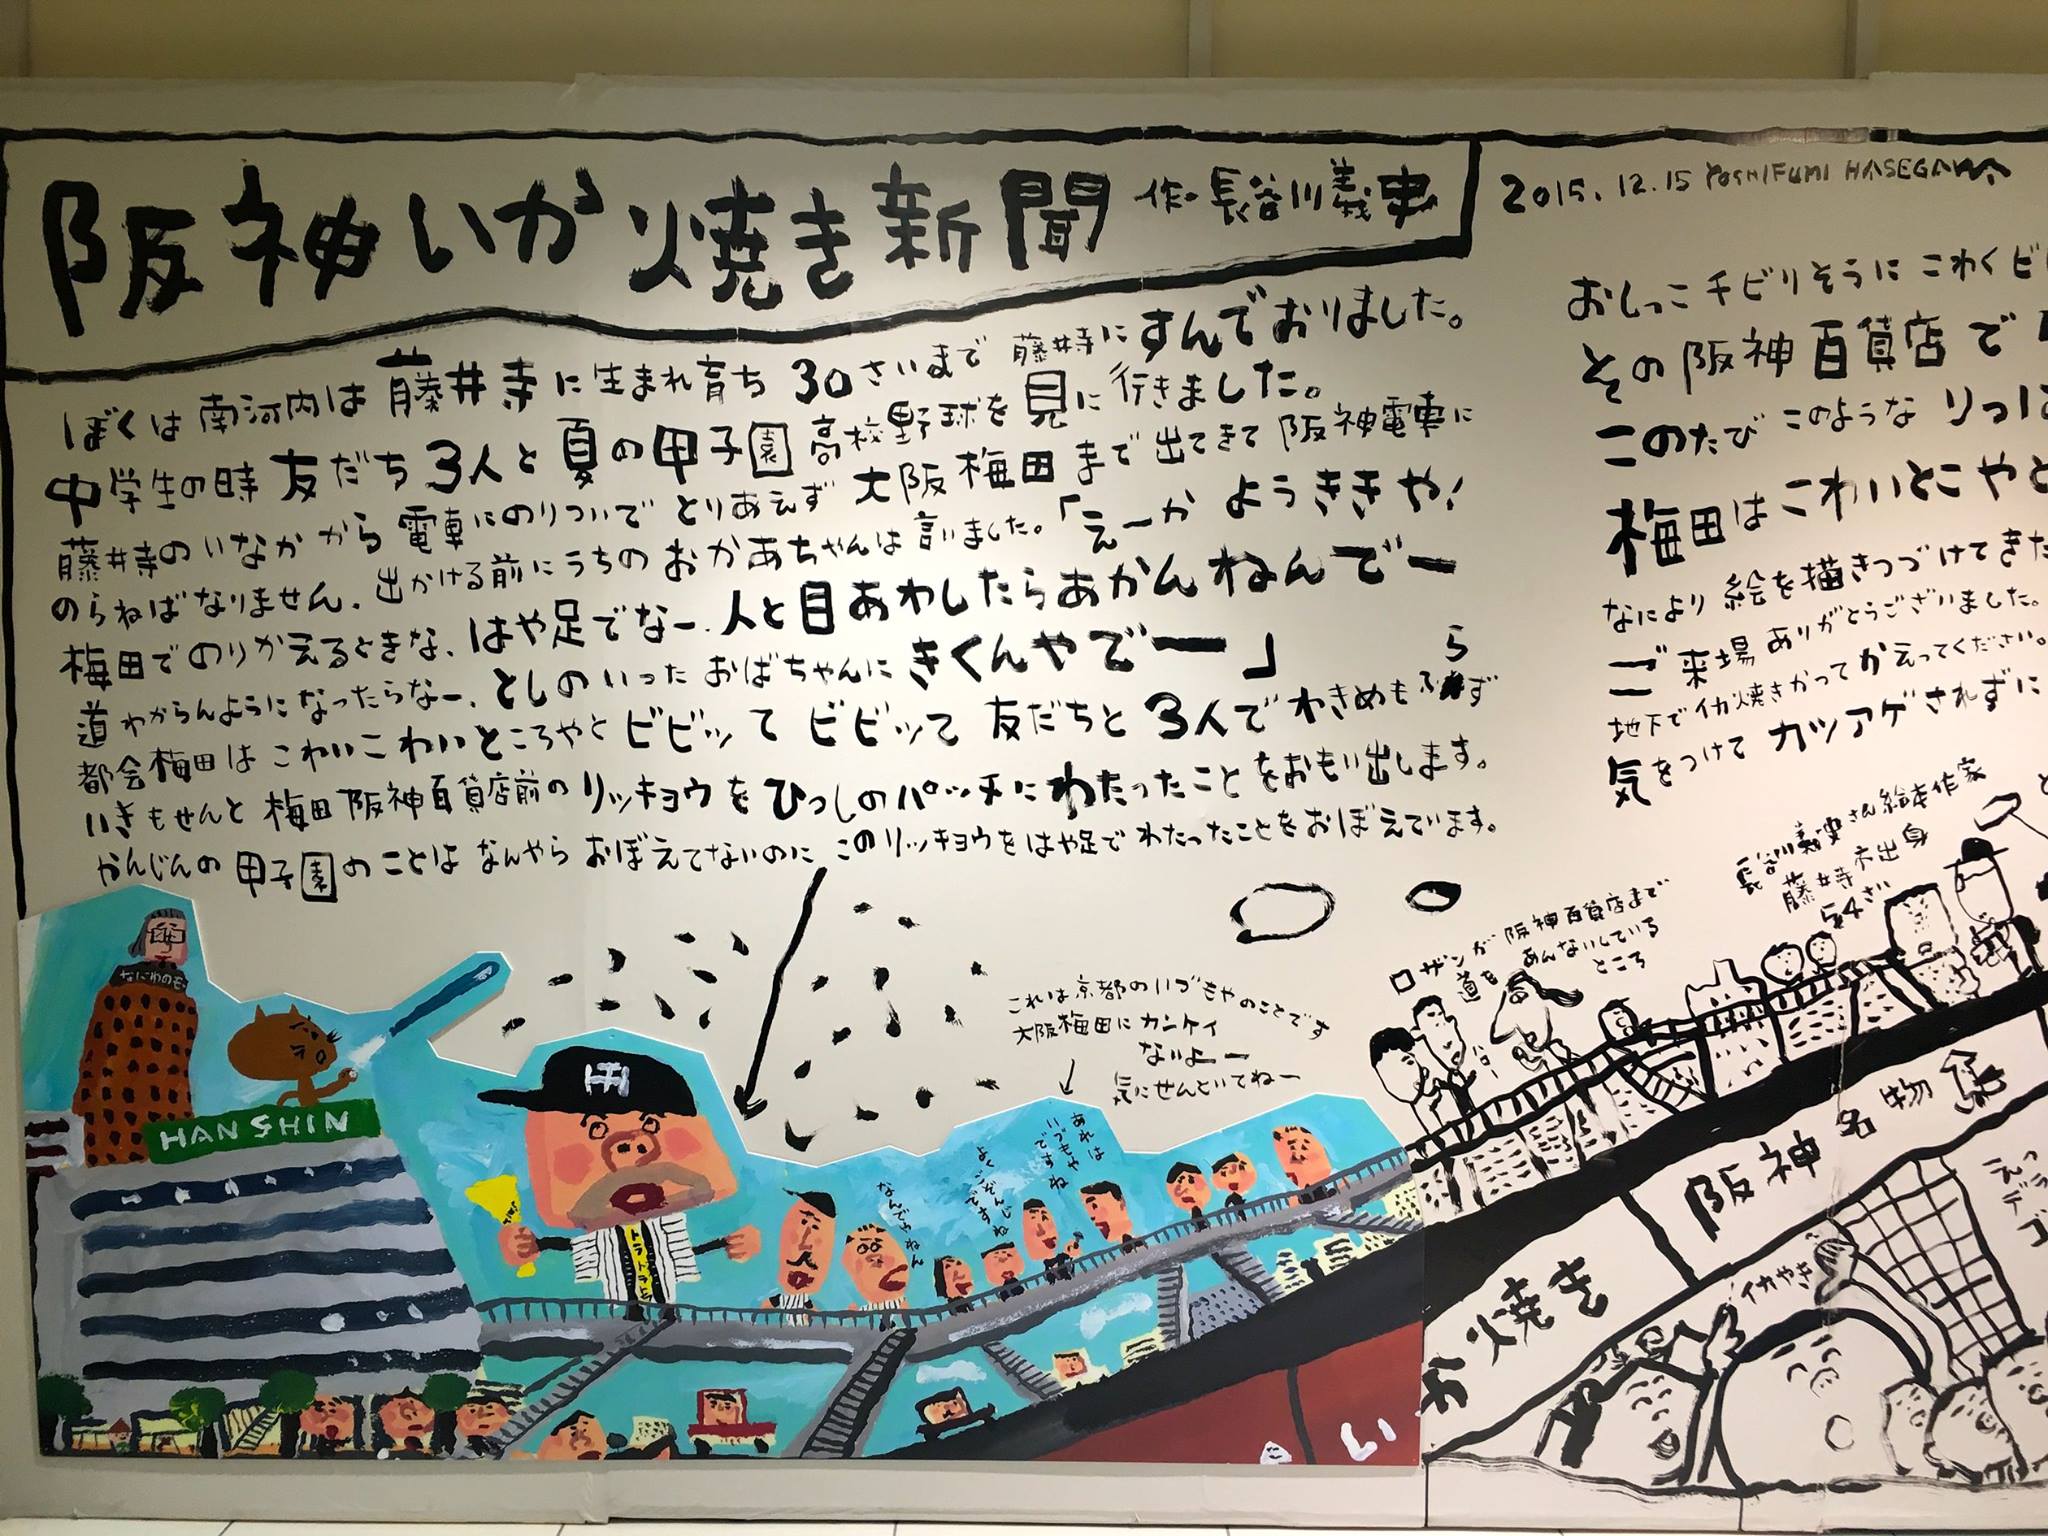 阪神百貨店にある長谷川義史さんの「阪神いか焼き新聞」